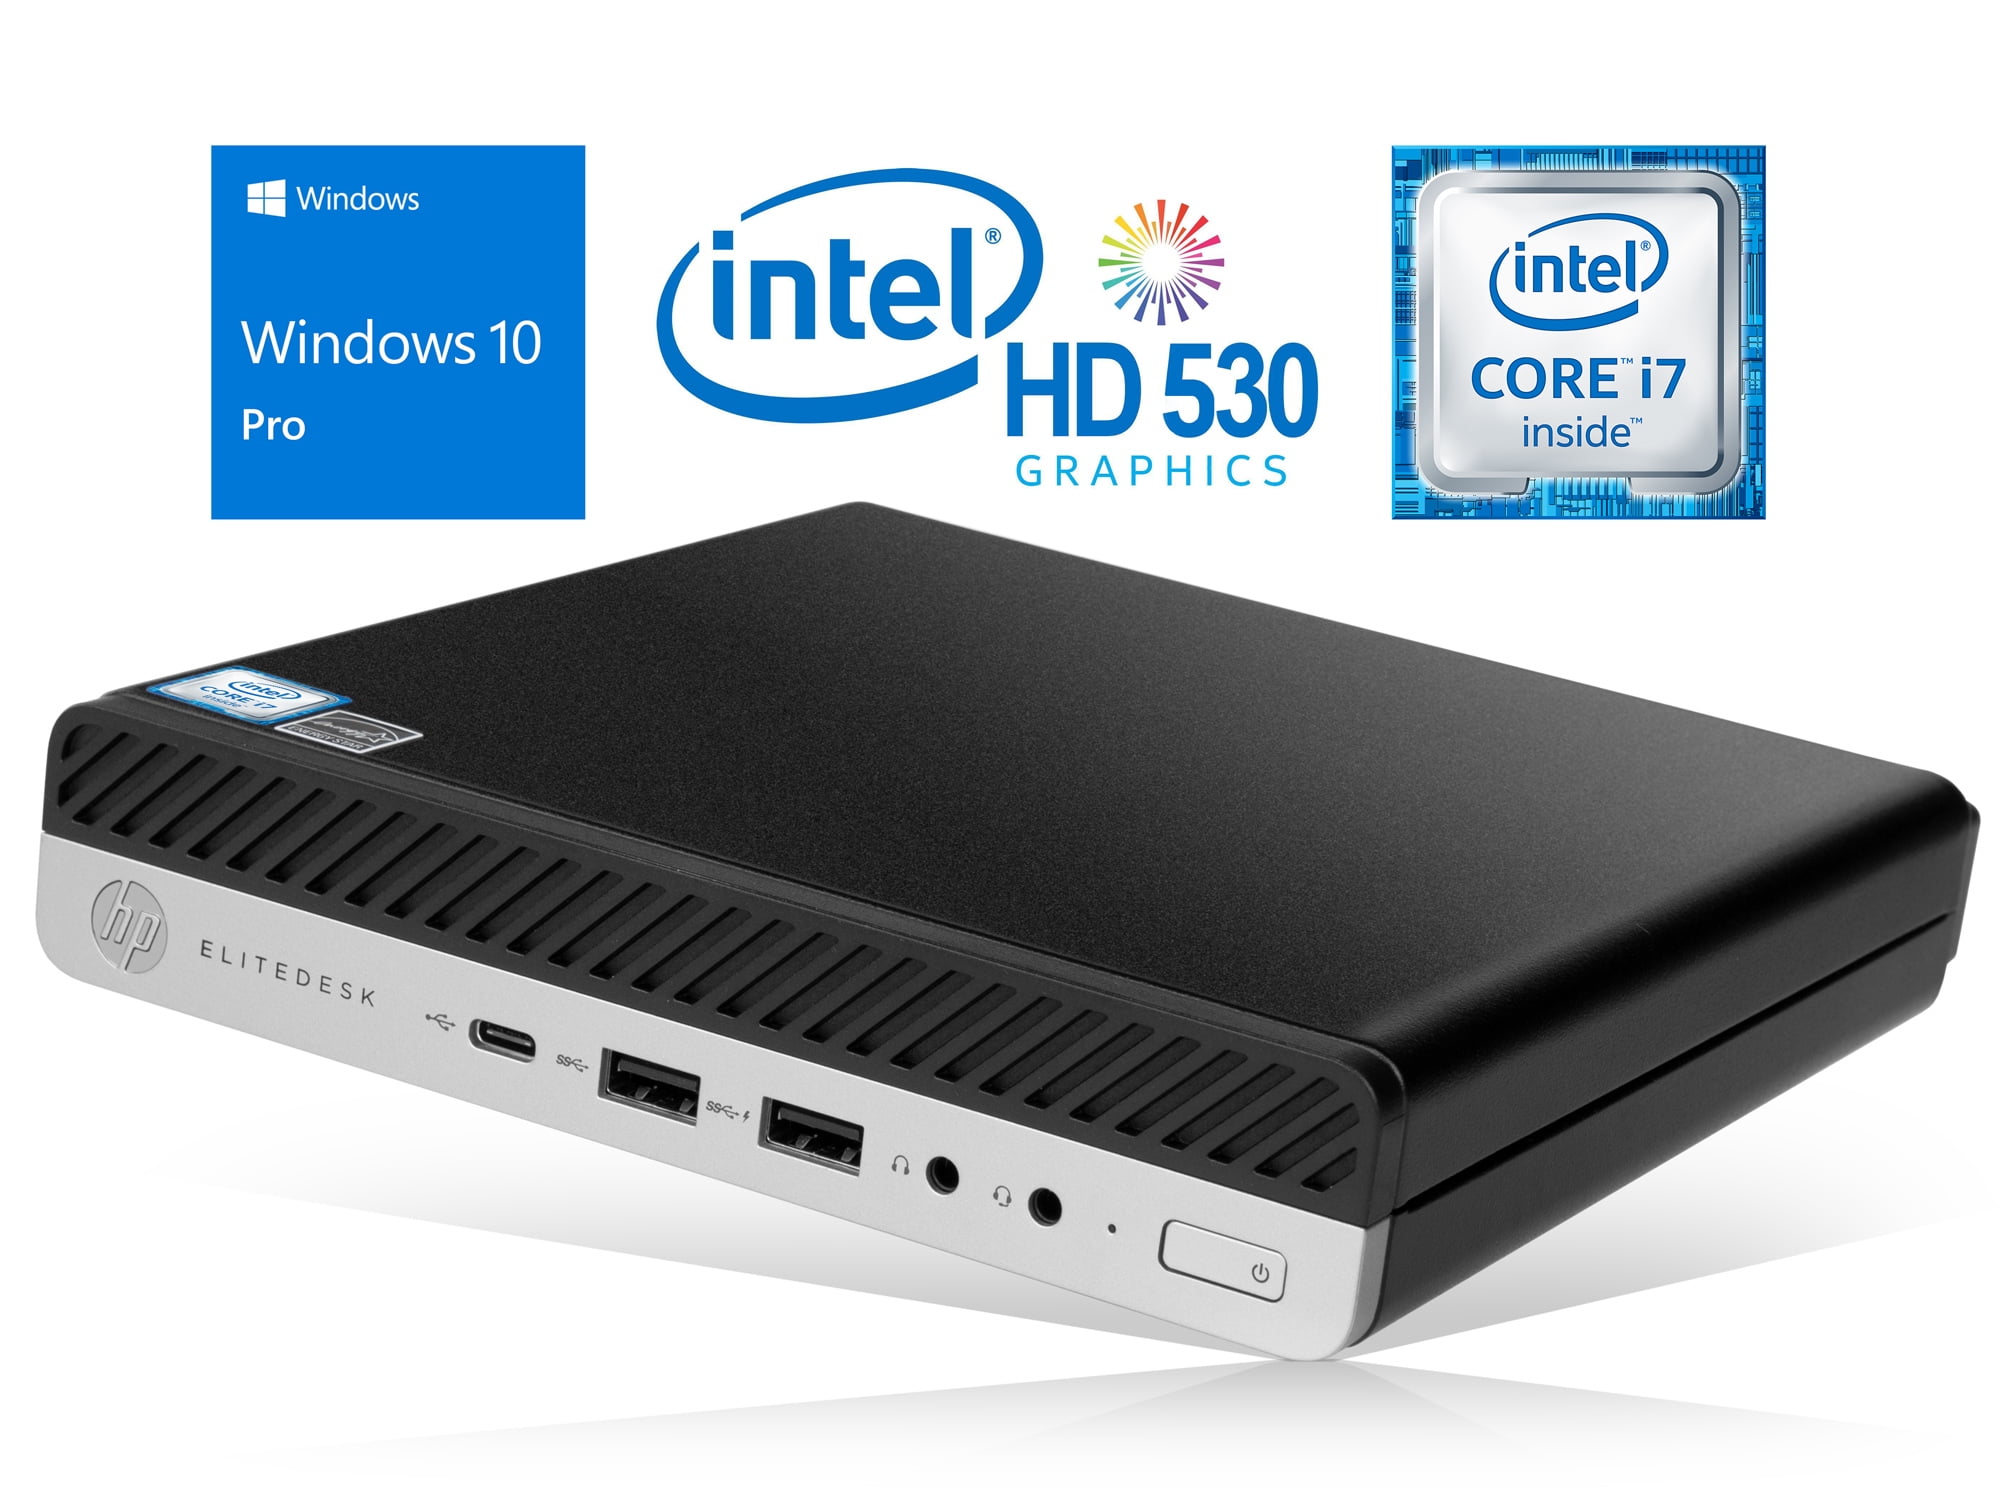 fisk absorption vedhæng HP EliteDesk 800 G3 Mini PC, Intel Core i7-6700 Upto 4.0GHz, 8GB RAM, 512GB  SSD, DisplayPort, Wi-Fi, Bluetooth, Windows 10 Pro - Walmart.com